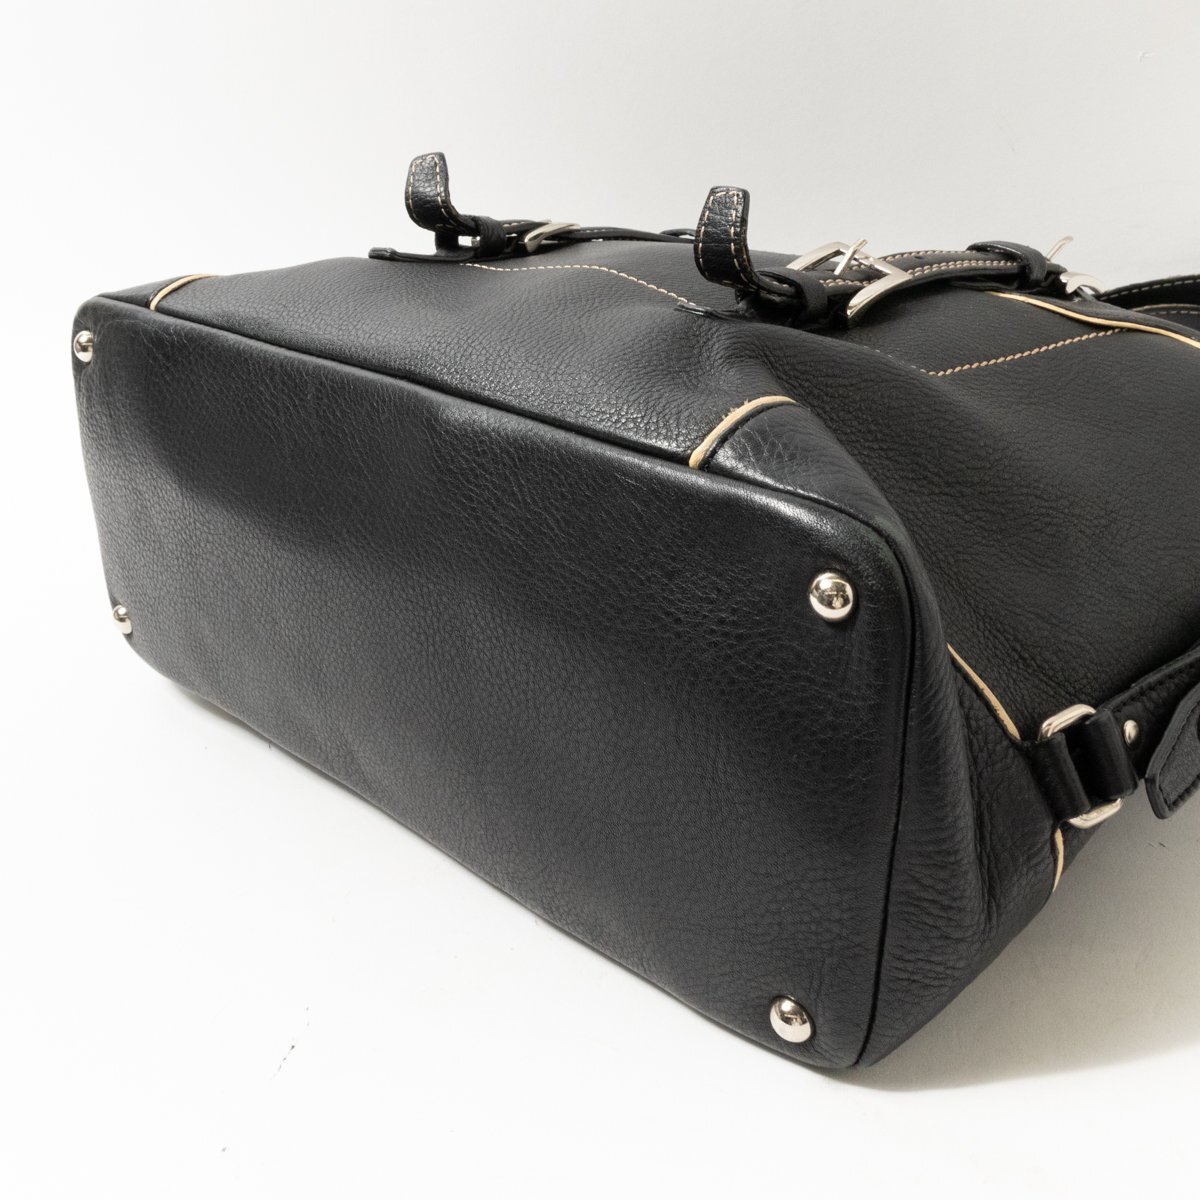 TOPKAPI ハンドバッグ トプカピ トートバッグ 手持ち 肩掛け ブラック ステッチ ファスナー開閉 綺麗め シンプル bag 鞄 婦人 レディースの画像5